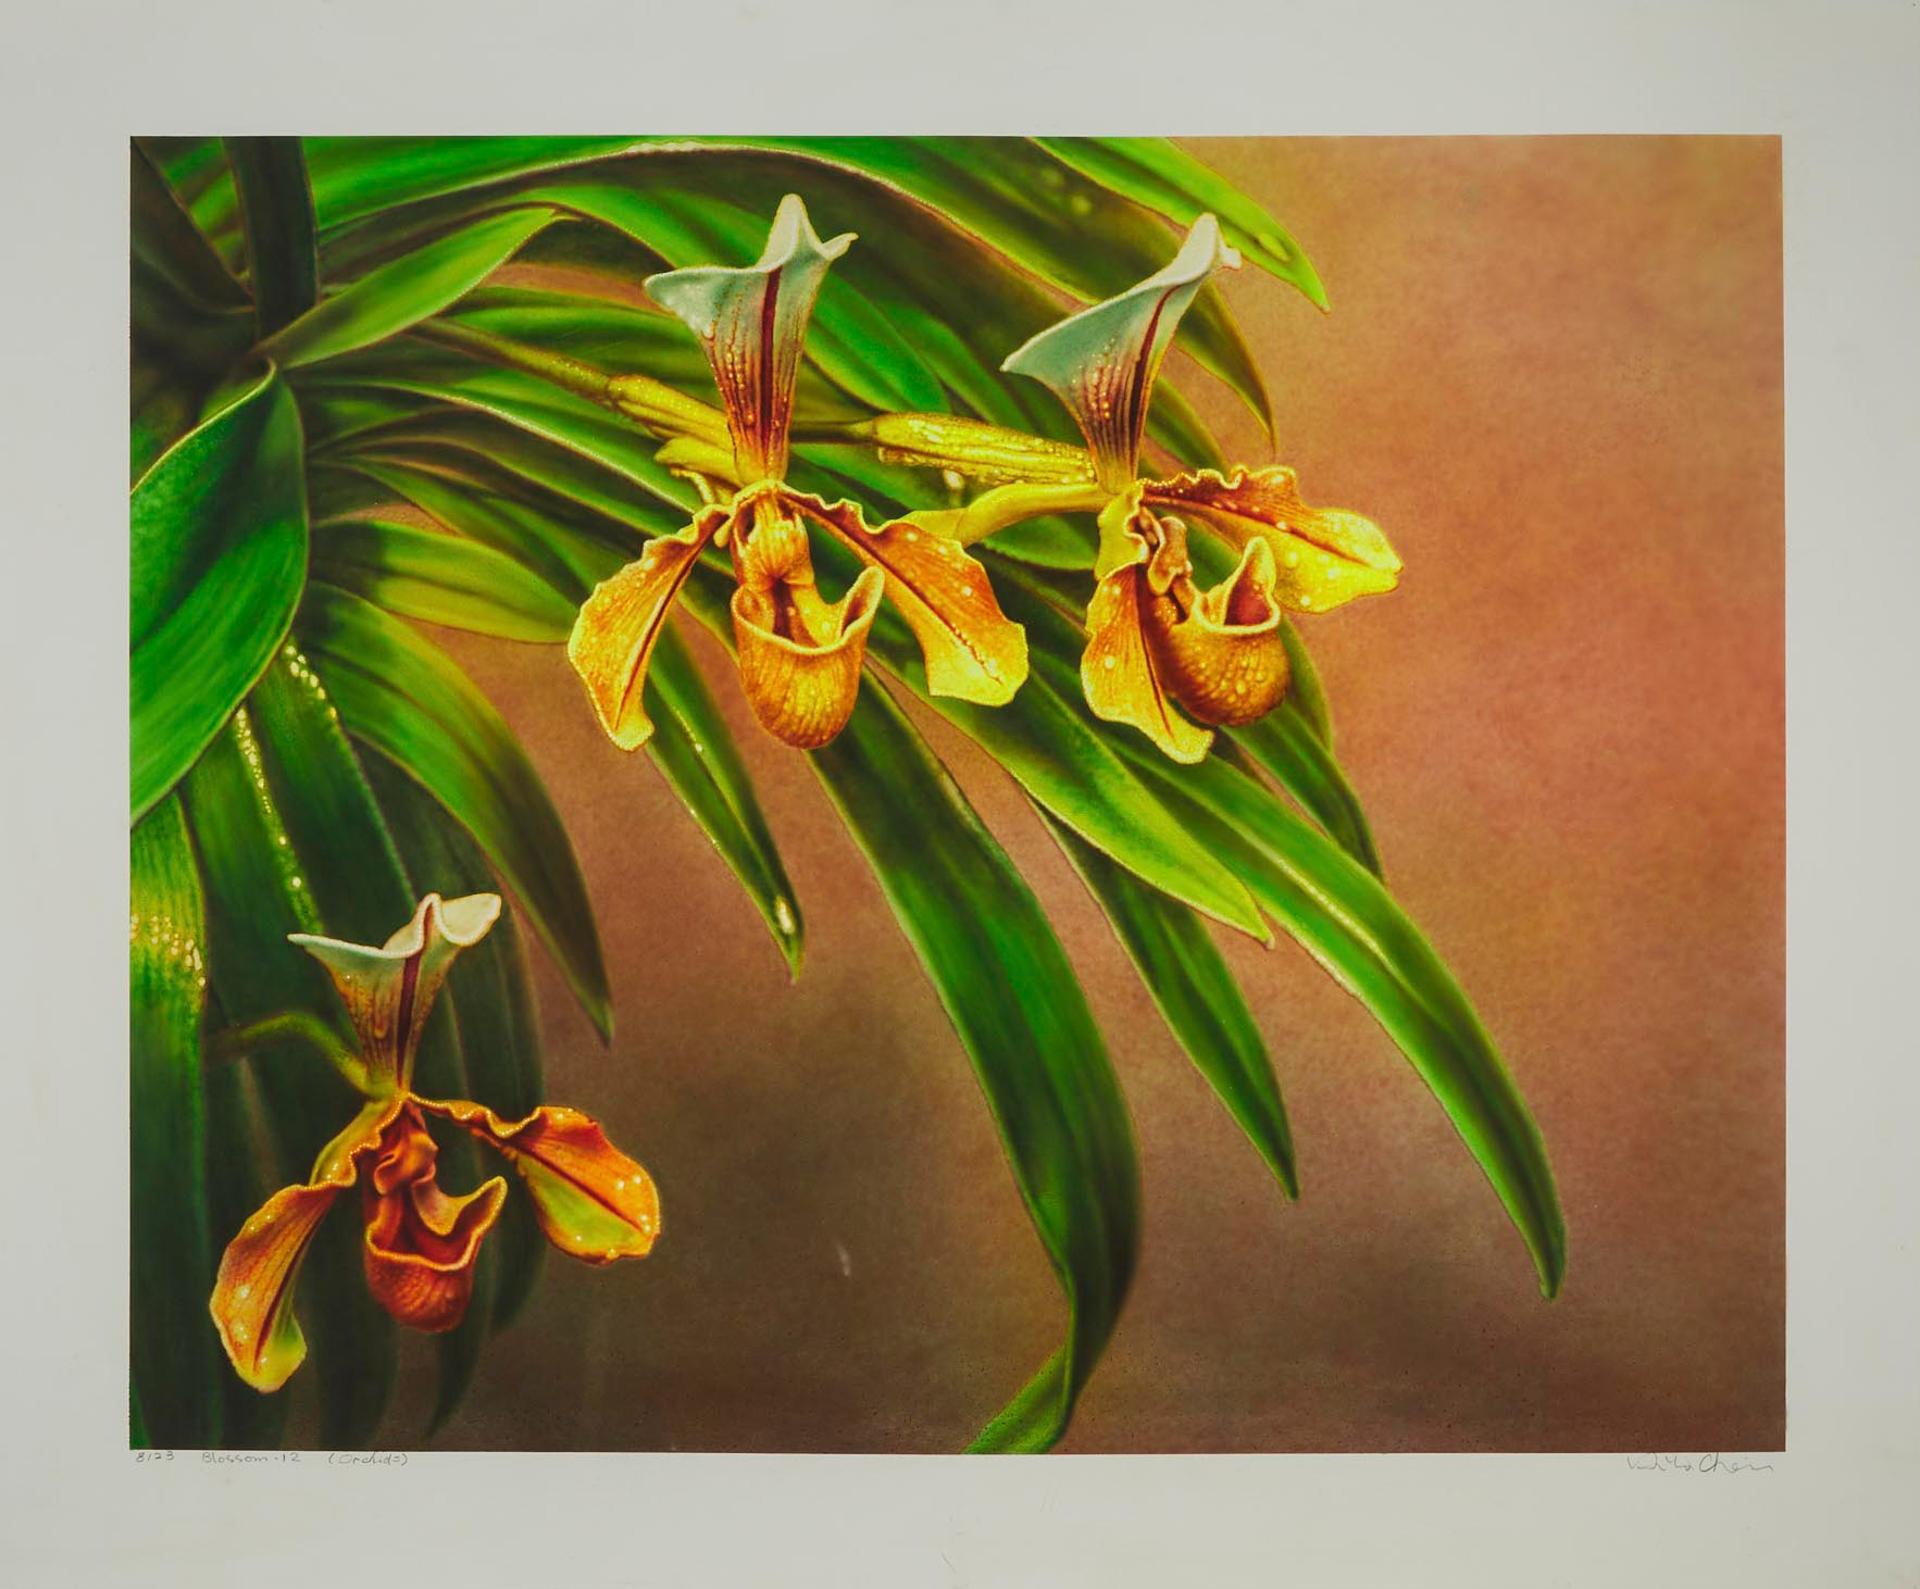 Hilo Chen - Blossom-12 (Orchids), 1981